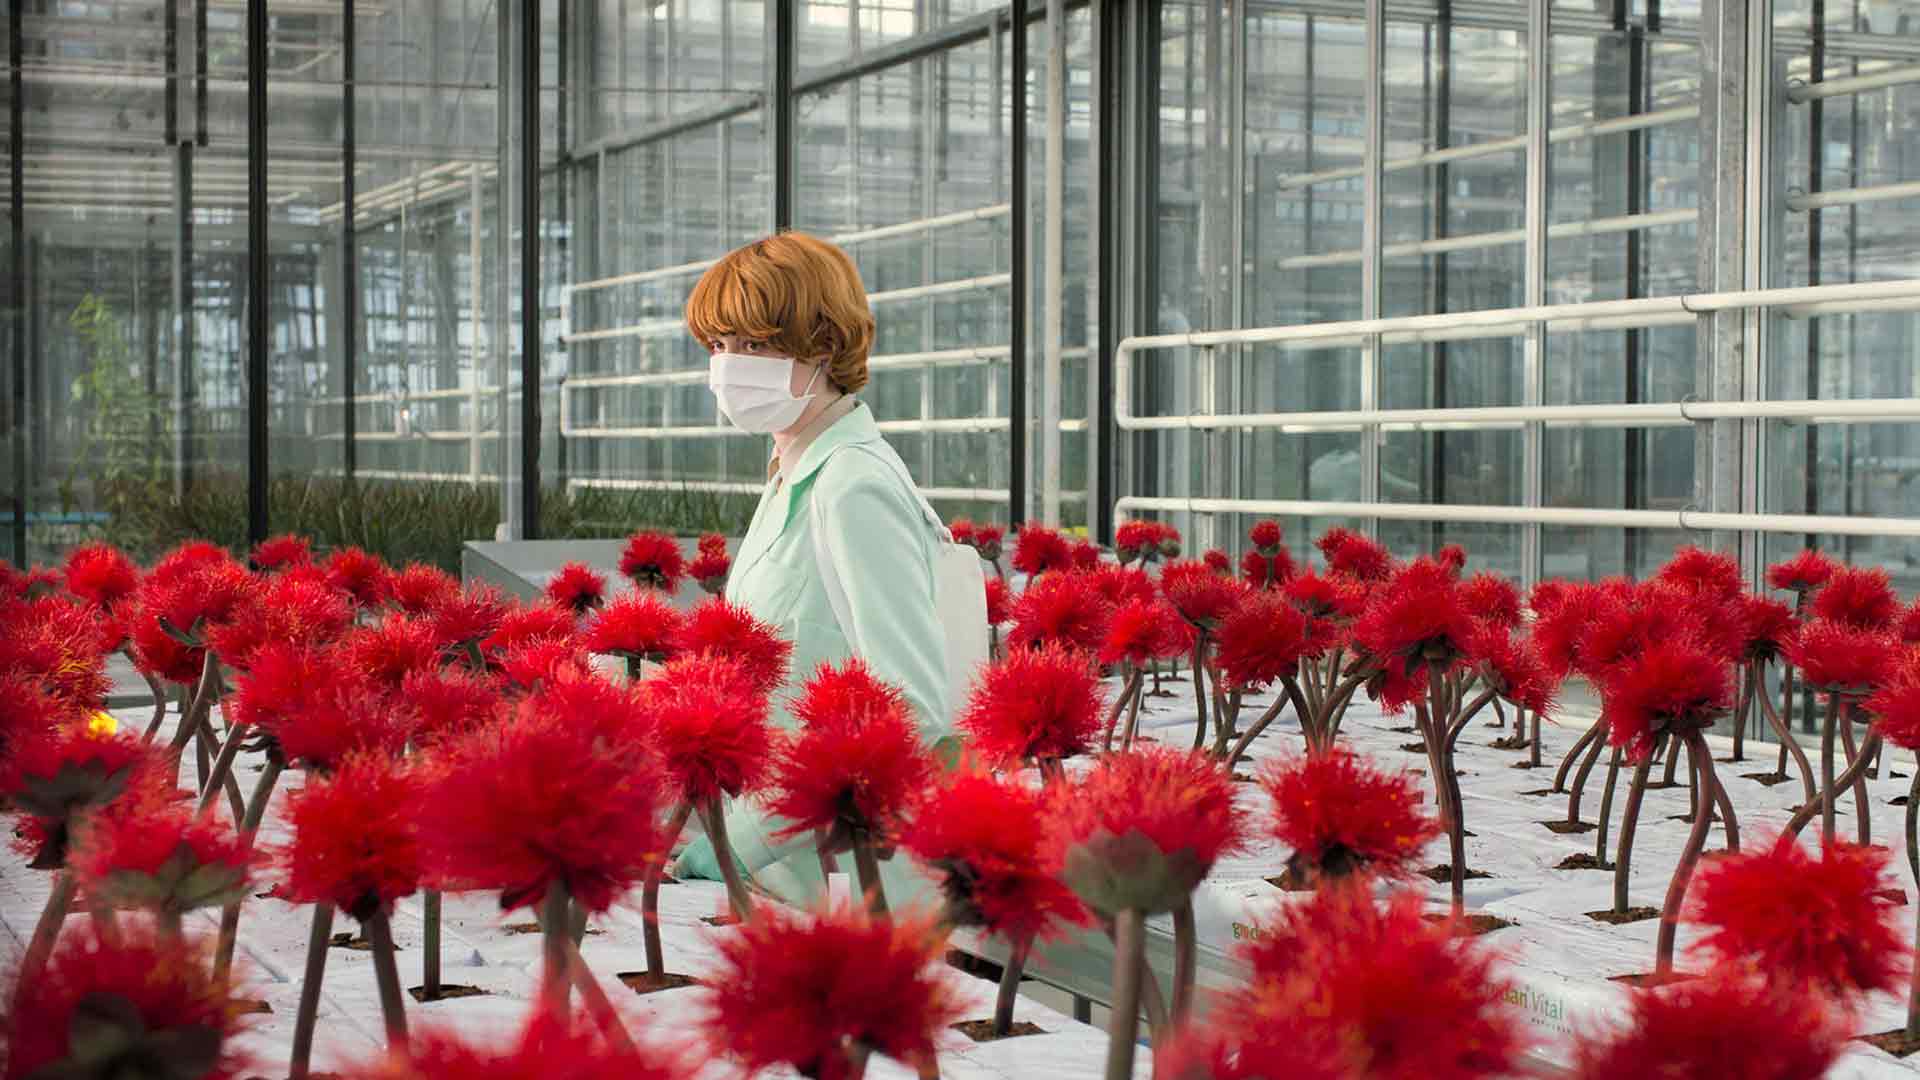 Une femme est dans une serre, entourée de fleurs rouges.